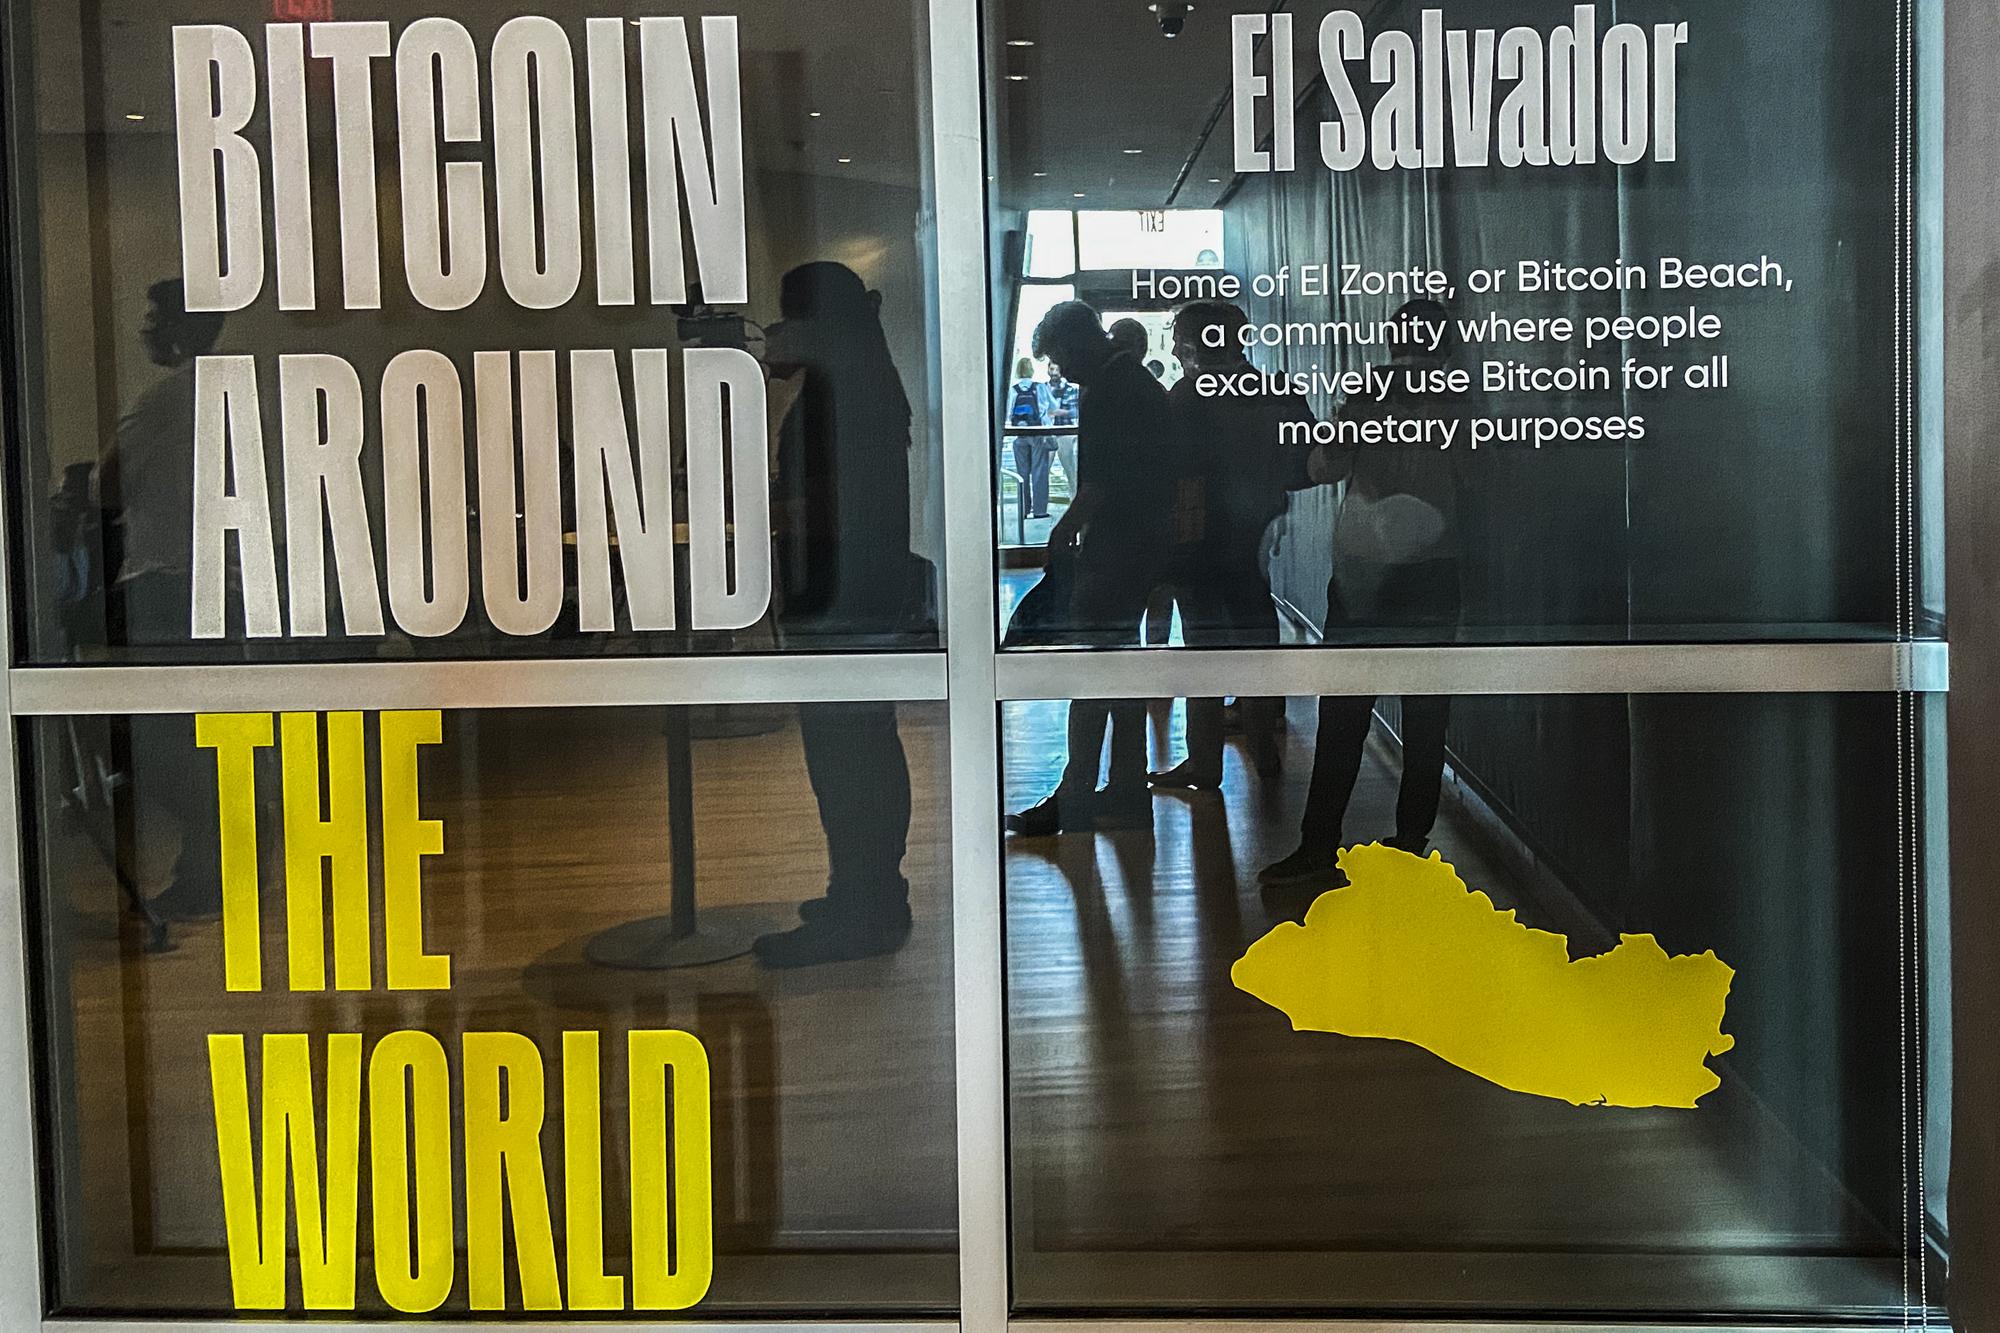 Una exhibición en el New World Center de Miami destacaba hitos del bitcoin en el mundo. De El Salvador, eligieron la playa El Zonte, donde un proyecto piloto con bitcoin empezó en 2019, y una exageración: que la comunidad 